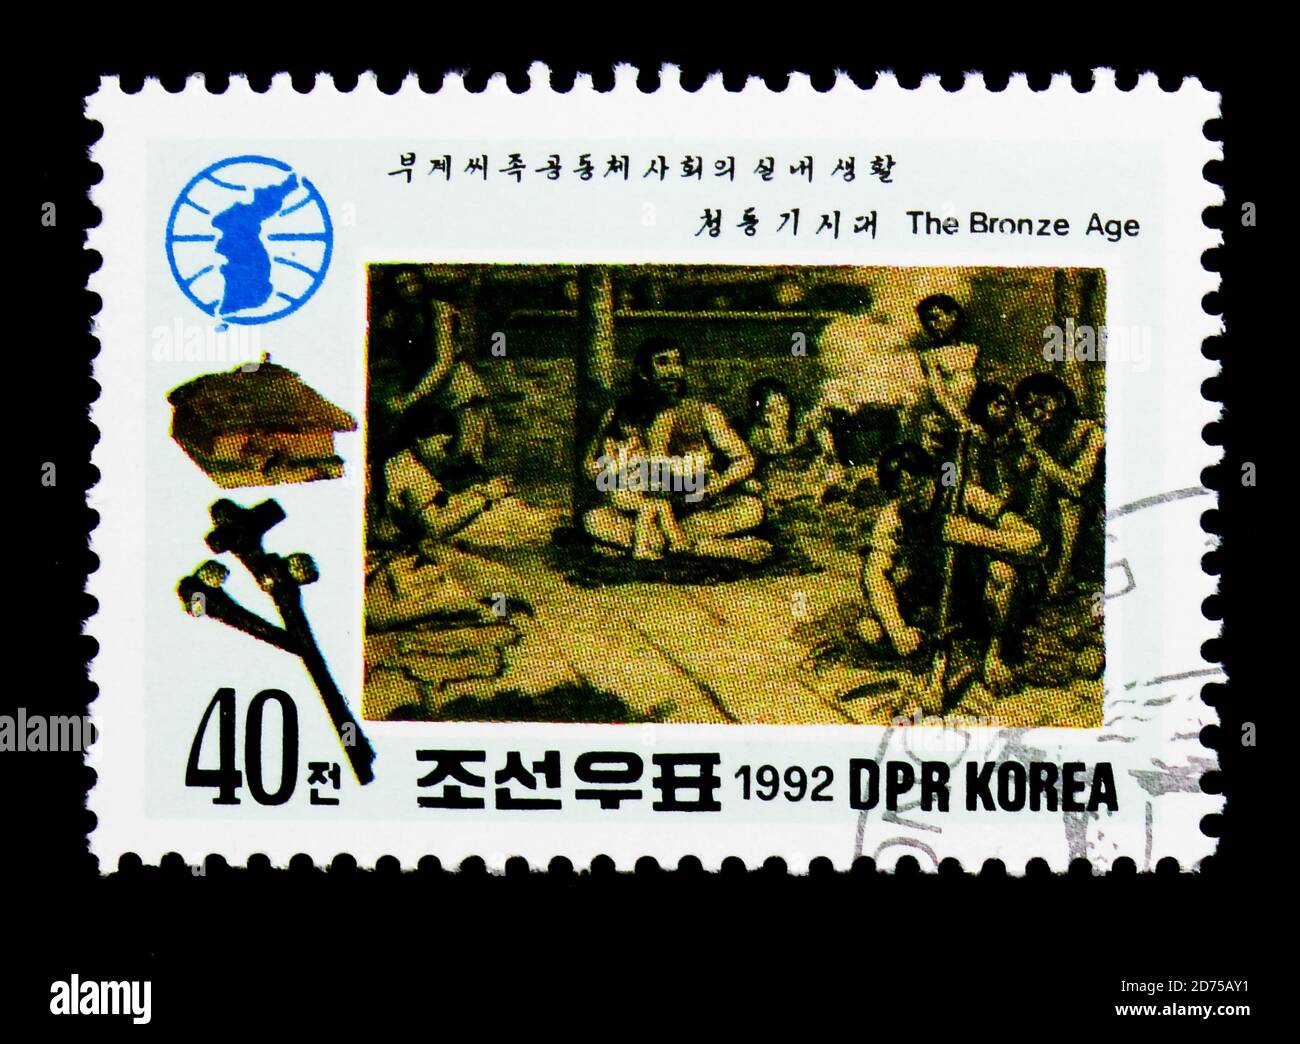 MOSCOU, RUSSIE - 25 NOVEMBRE 2017 : un timbre imprimé en république populaire démocratique de Corée montre la Préhistoire, série d'histoire, vers 1992 Banque D'Images